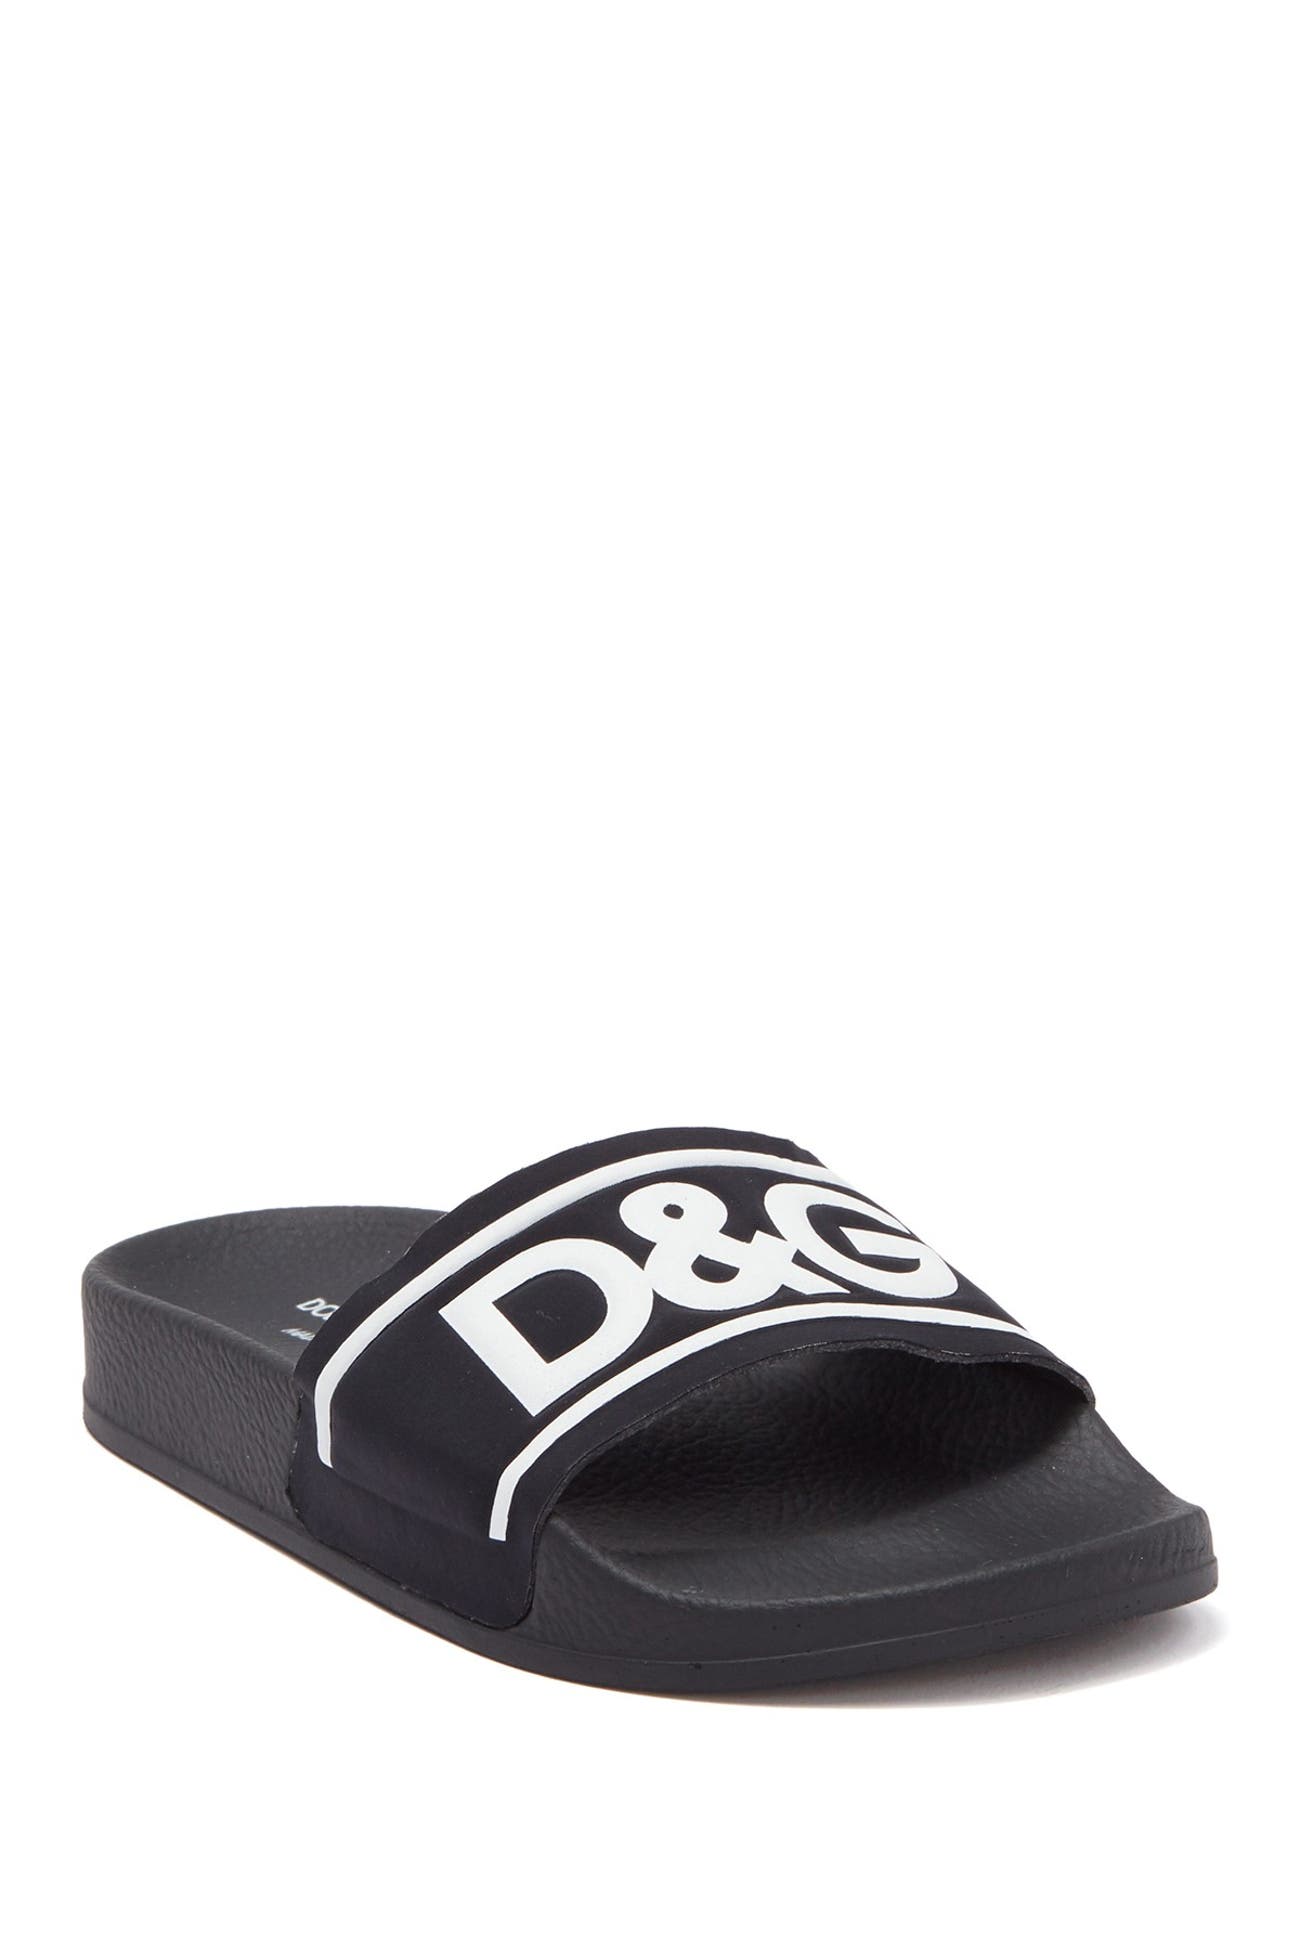 Dolce & Gabbana | Logo Slide Sandal | Nordstrom Rack